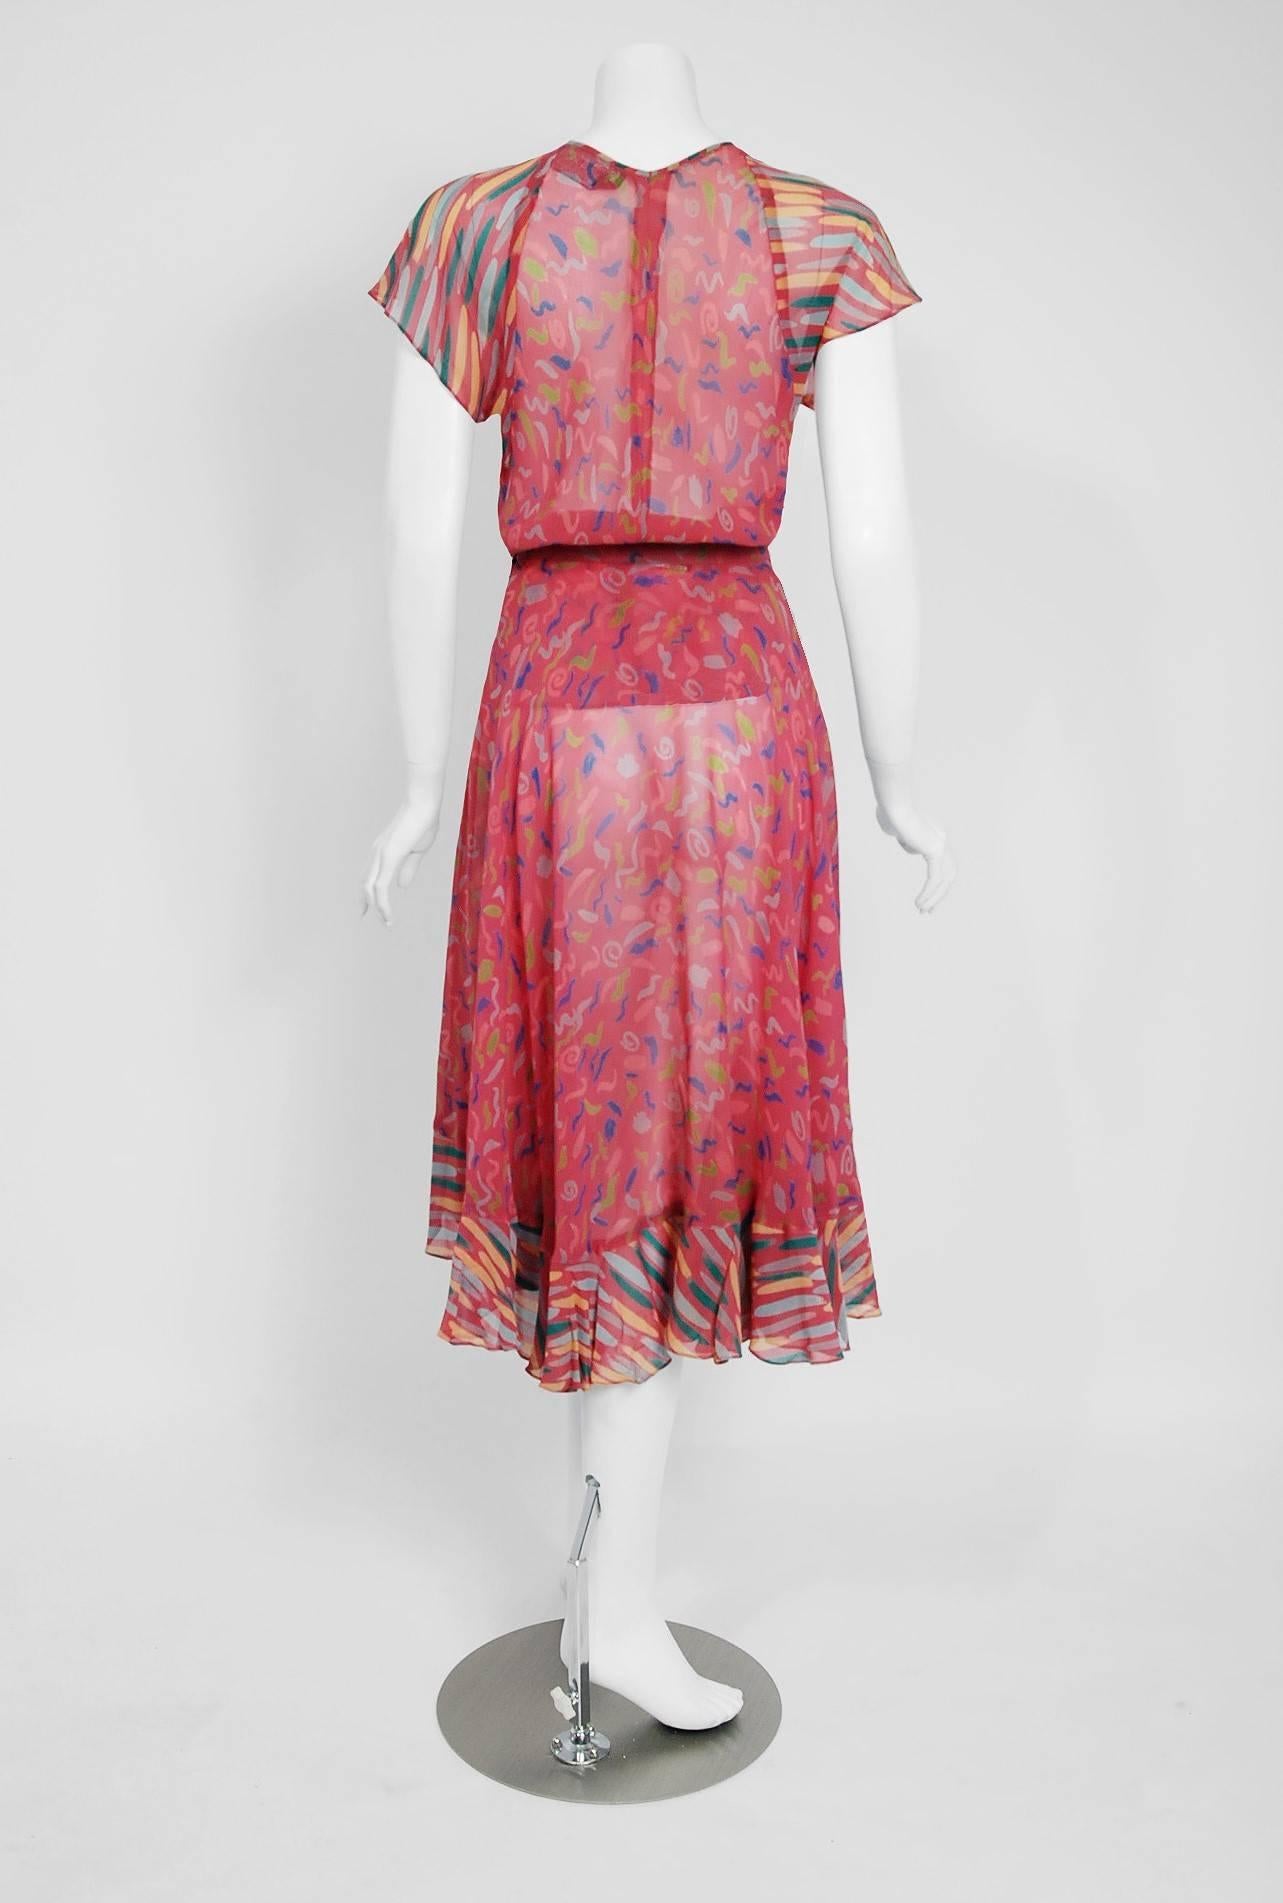 Vintage 1970's Ossie Clark for Radley Pink Celia Birtwell Print Crepe Dress Set For Sale 3